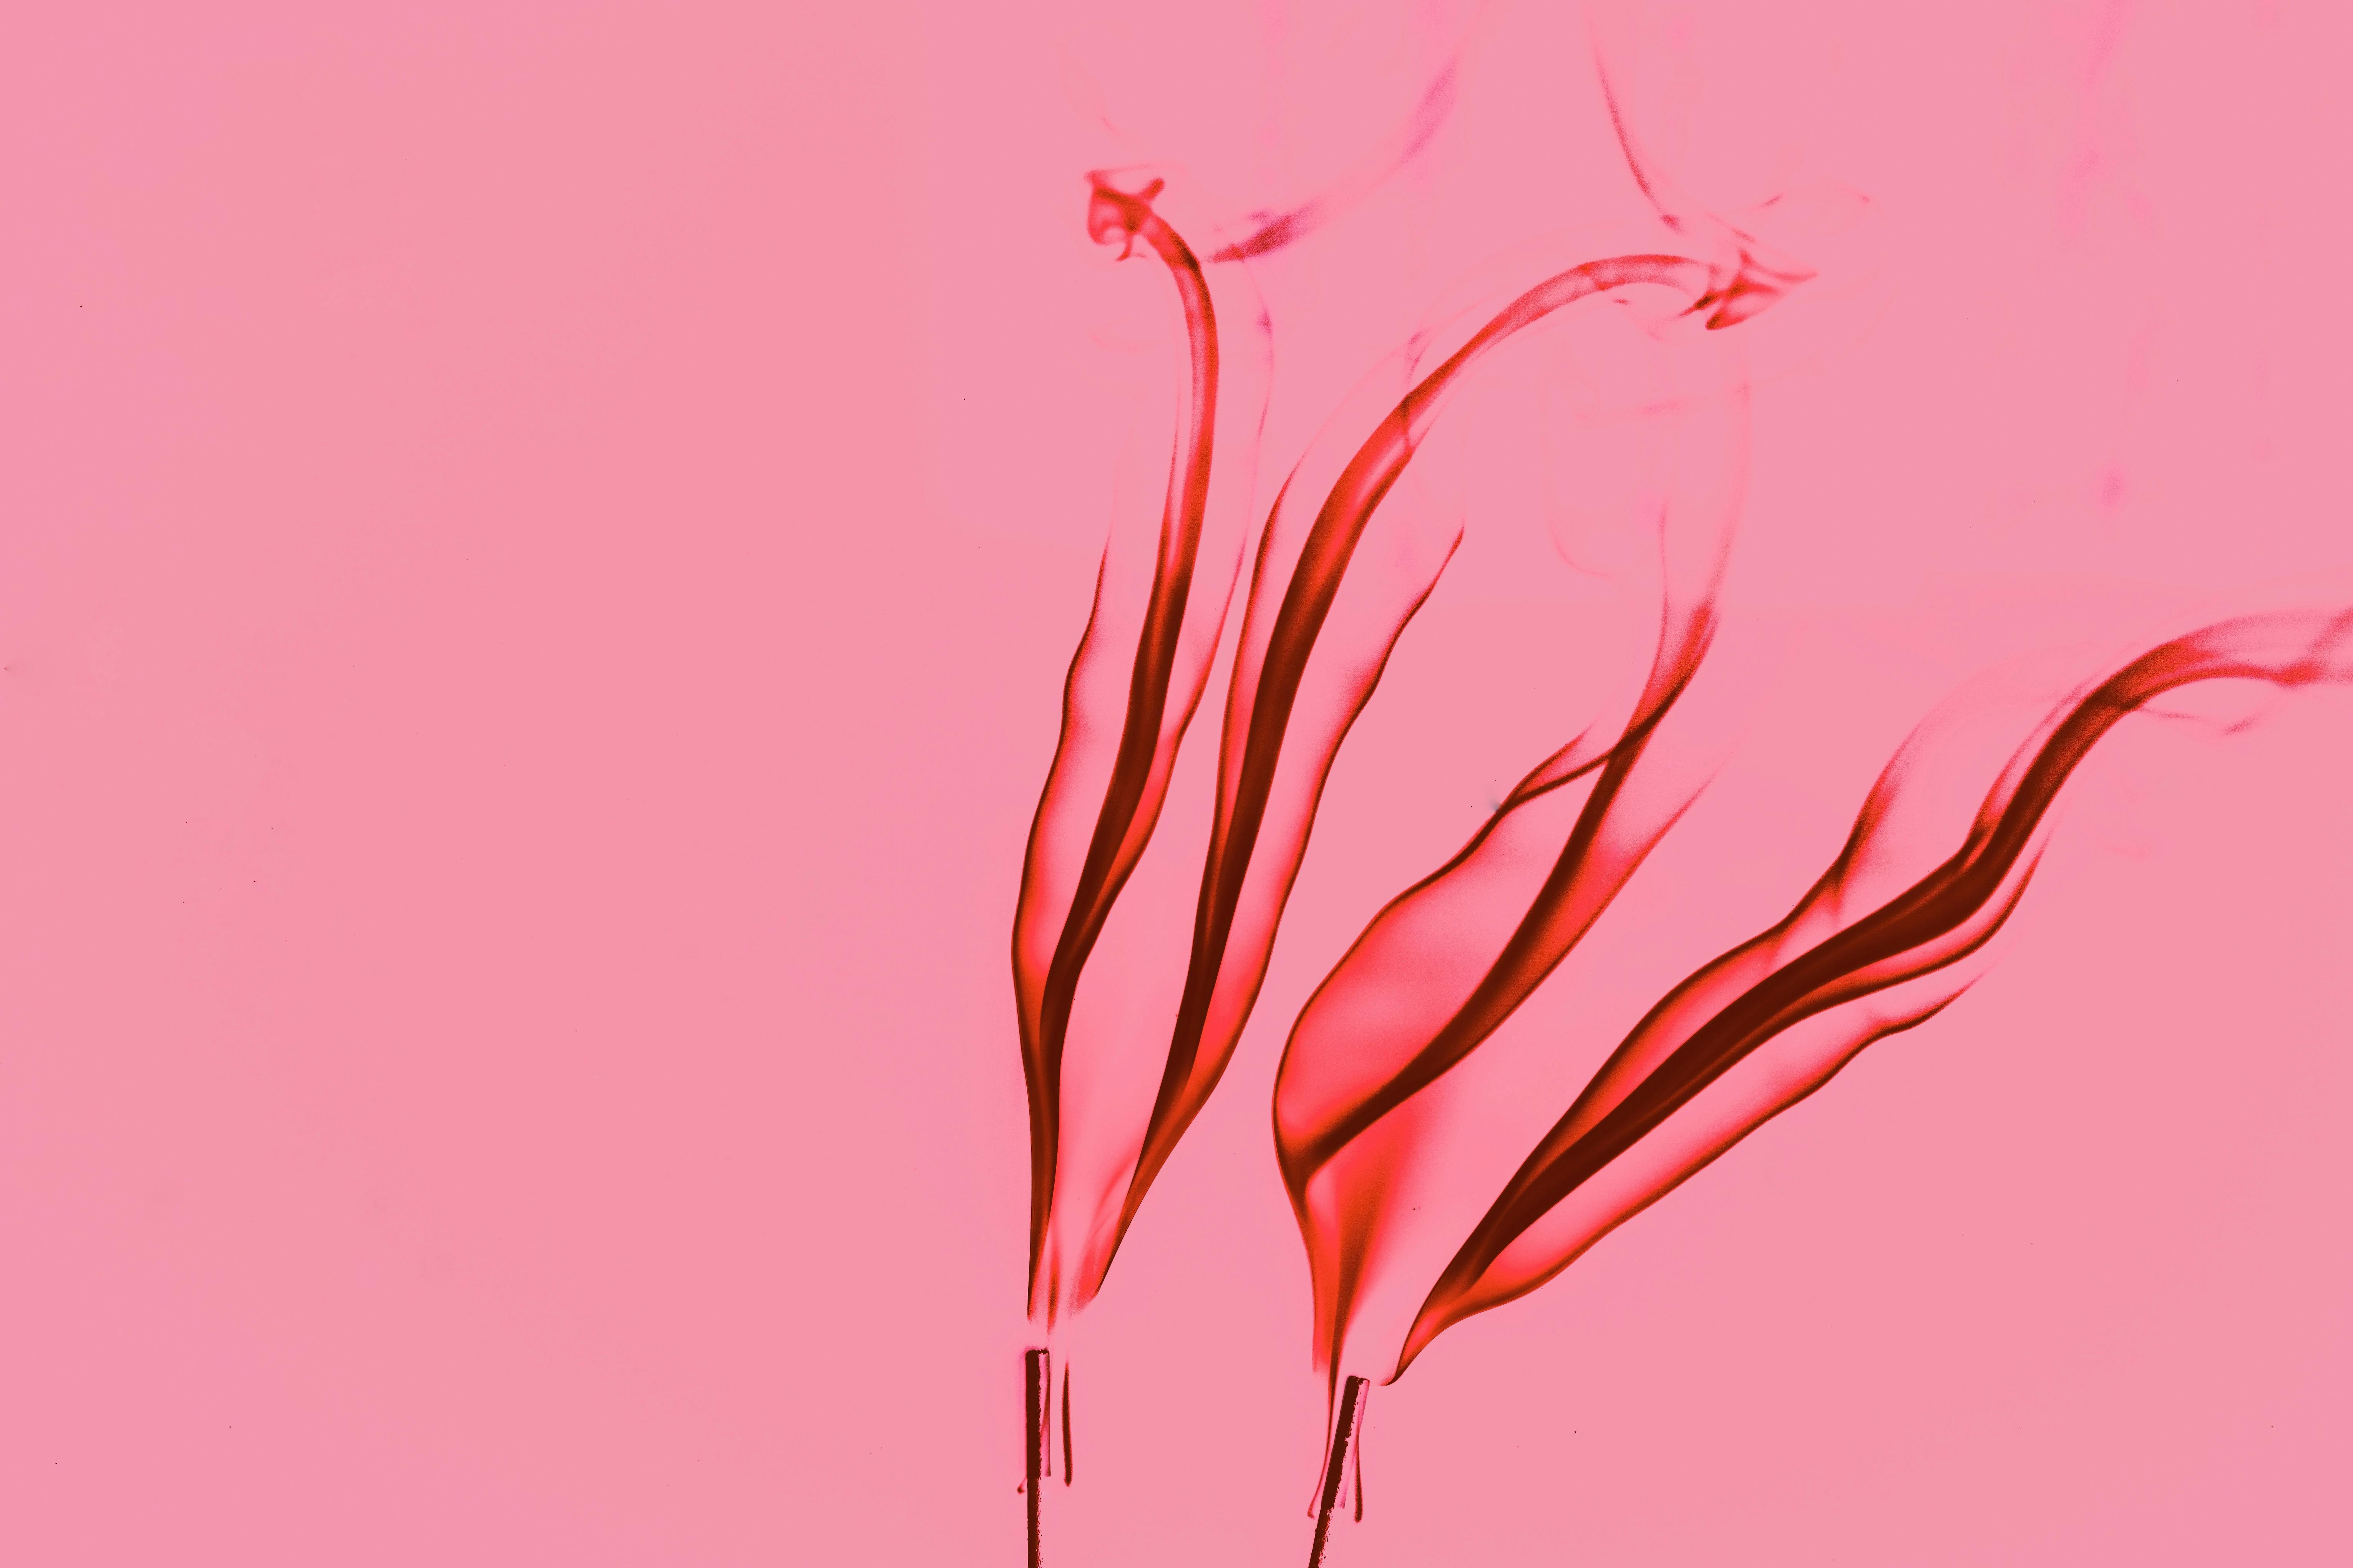 ピンクの炎の抽象的な壁紙 無料の写真素材